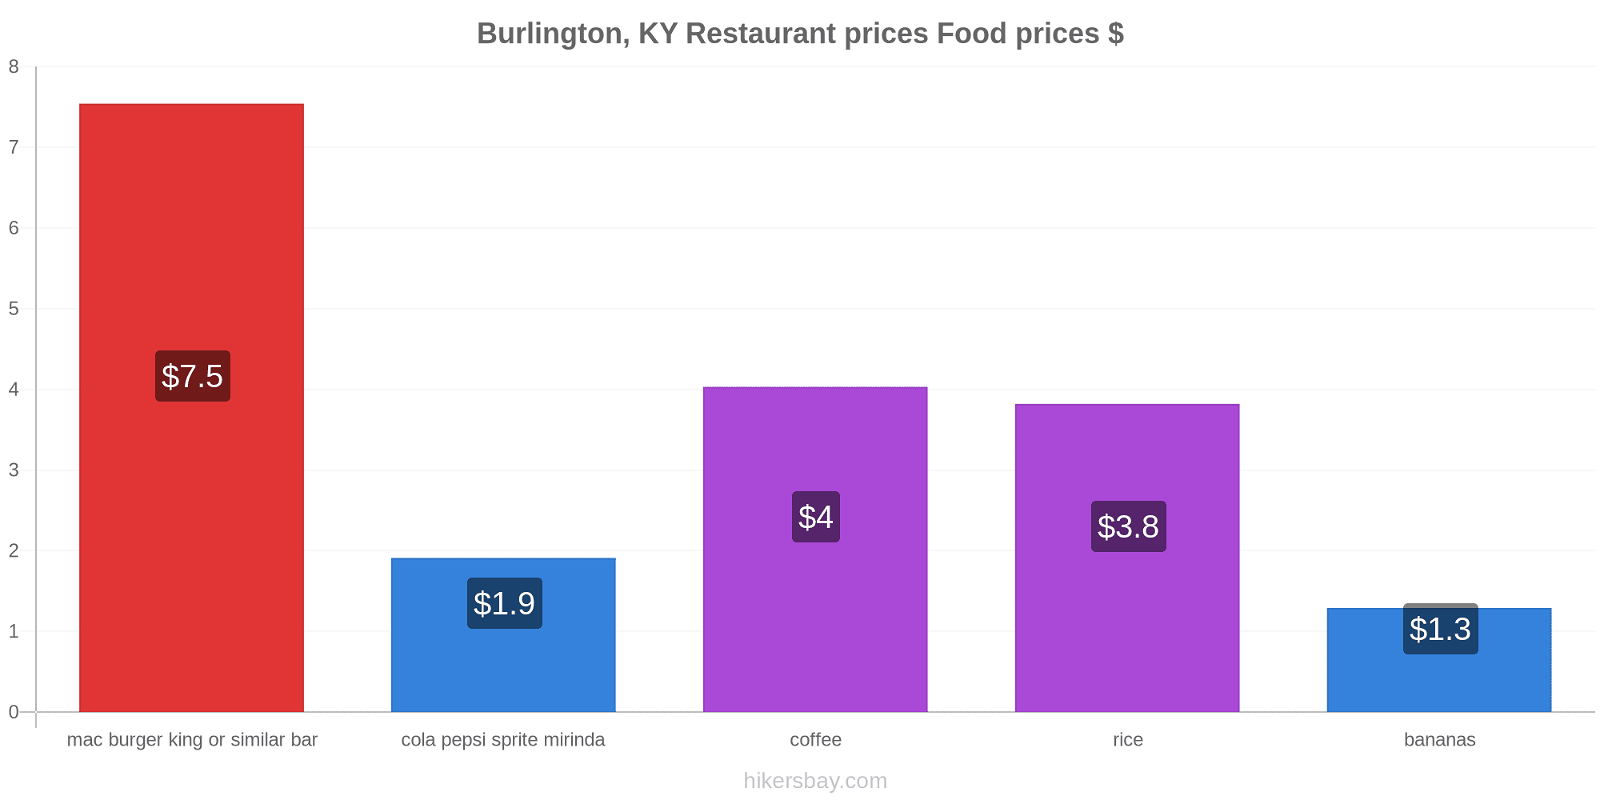 Burlington, KY price changes hikersbay.com